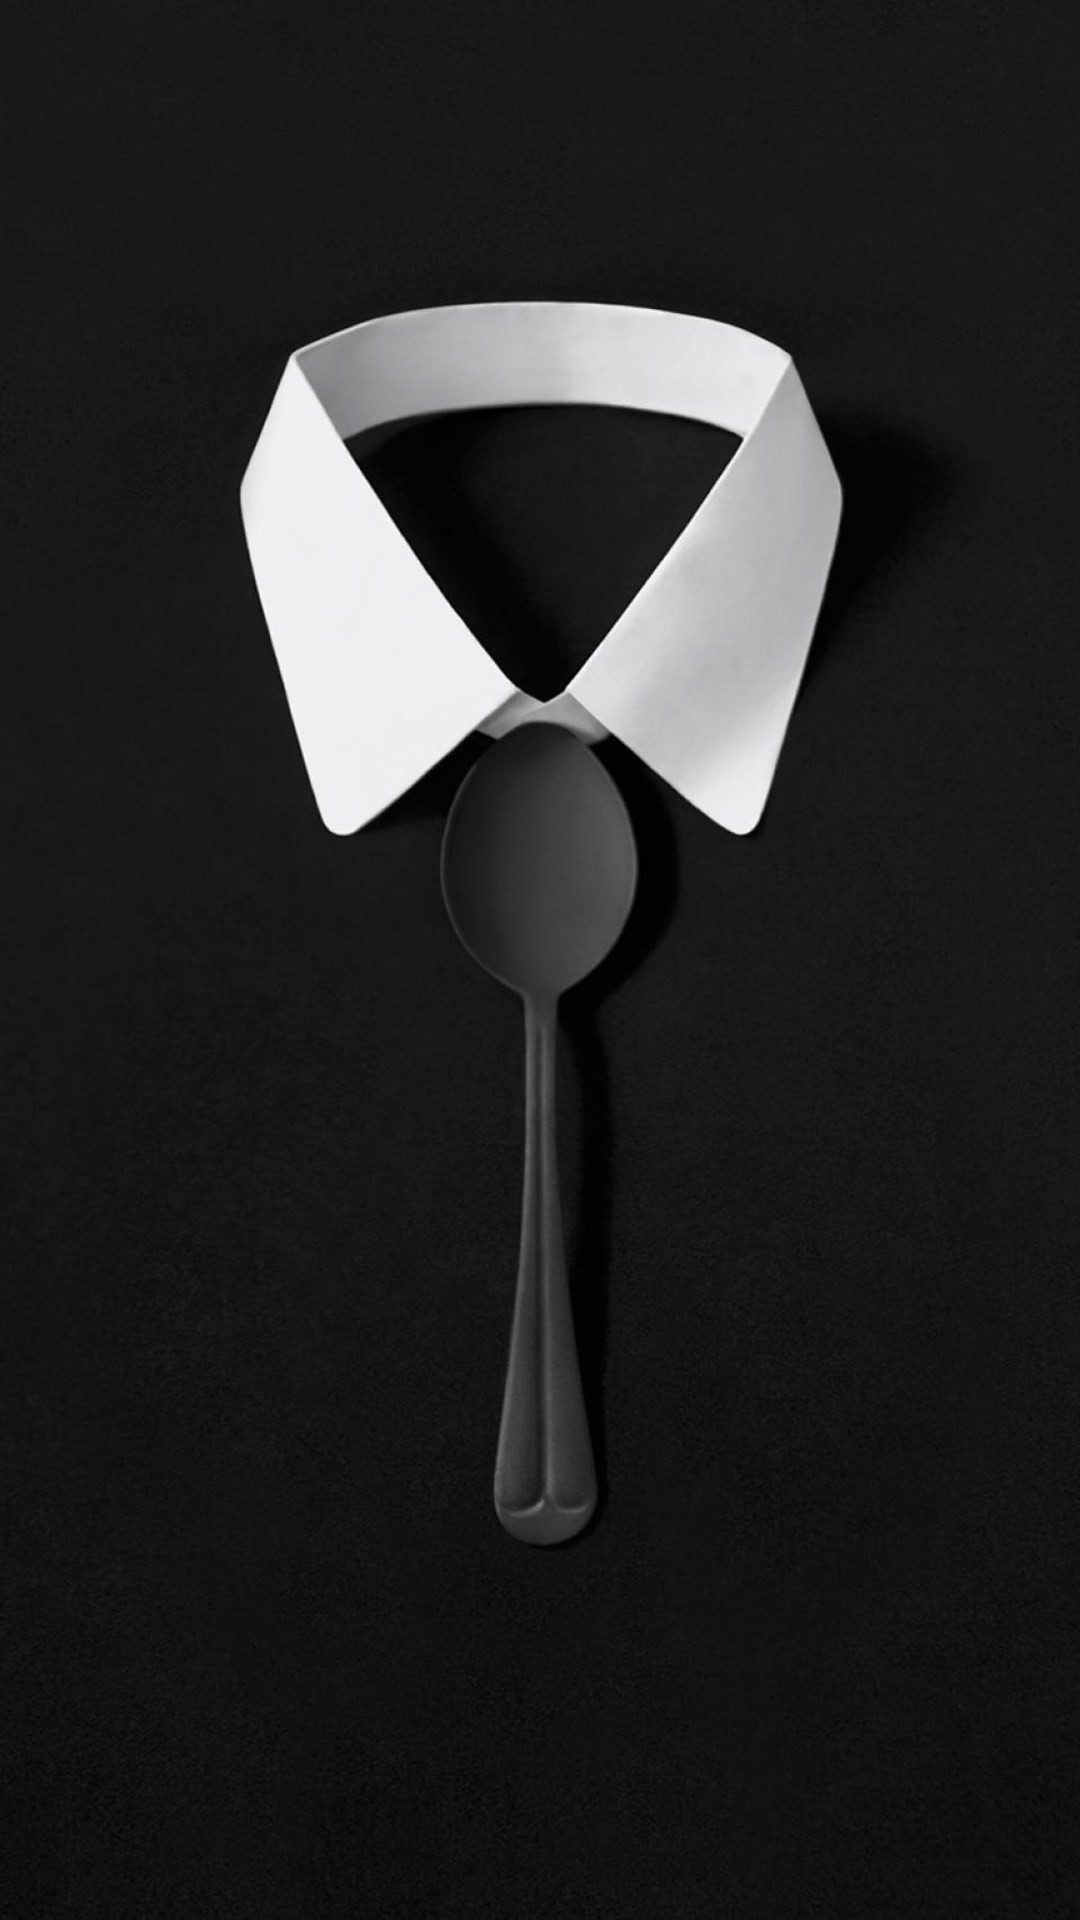 1080x1920 Dark Simple Suit Spoon Tie Simple iPhone 6 wallpaper